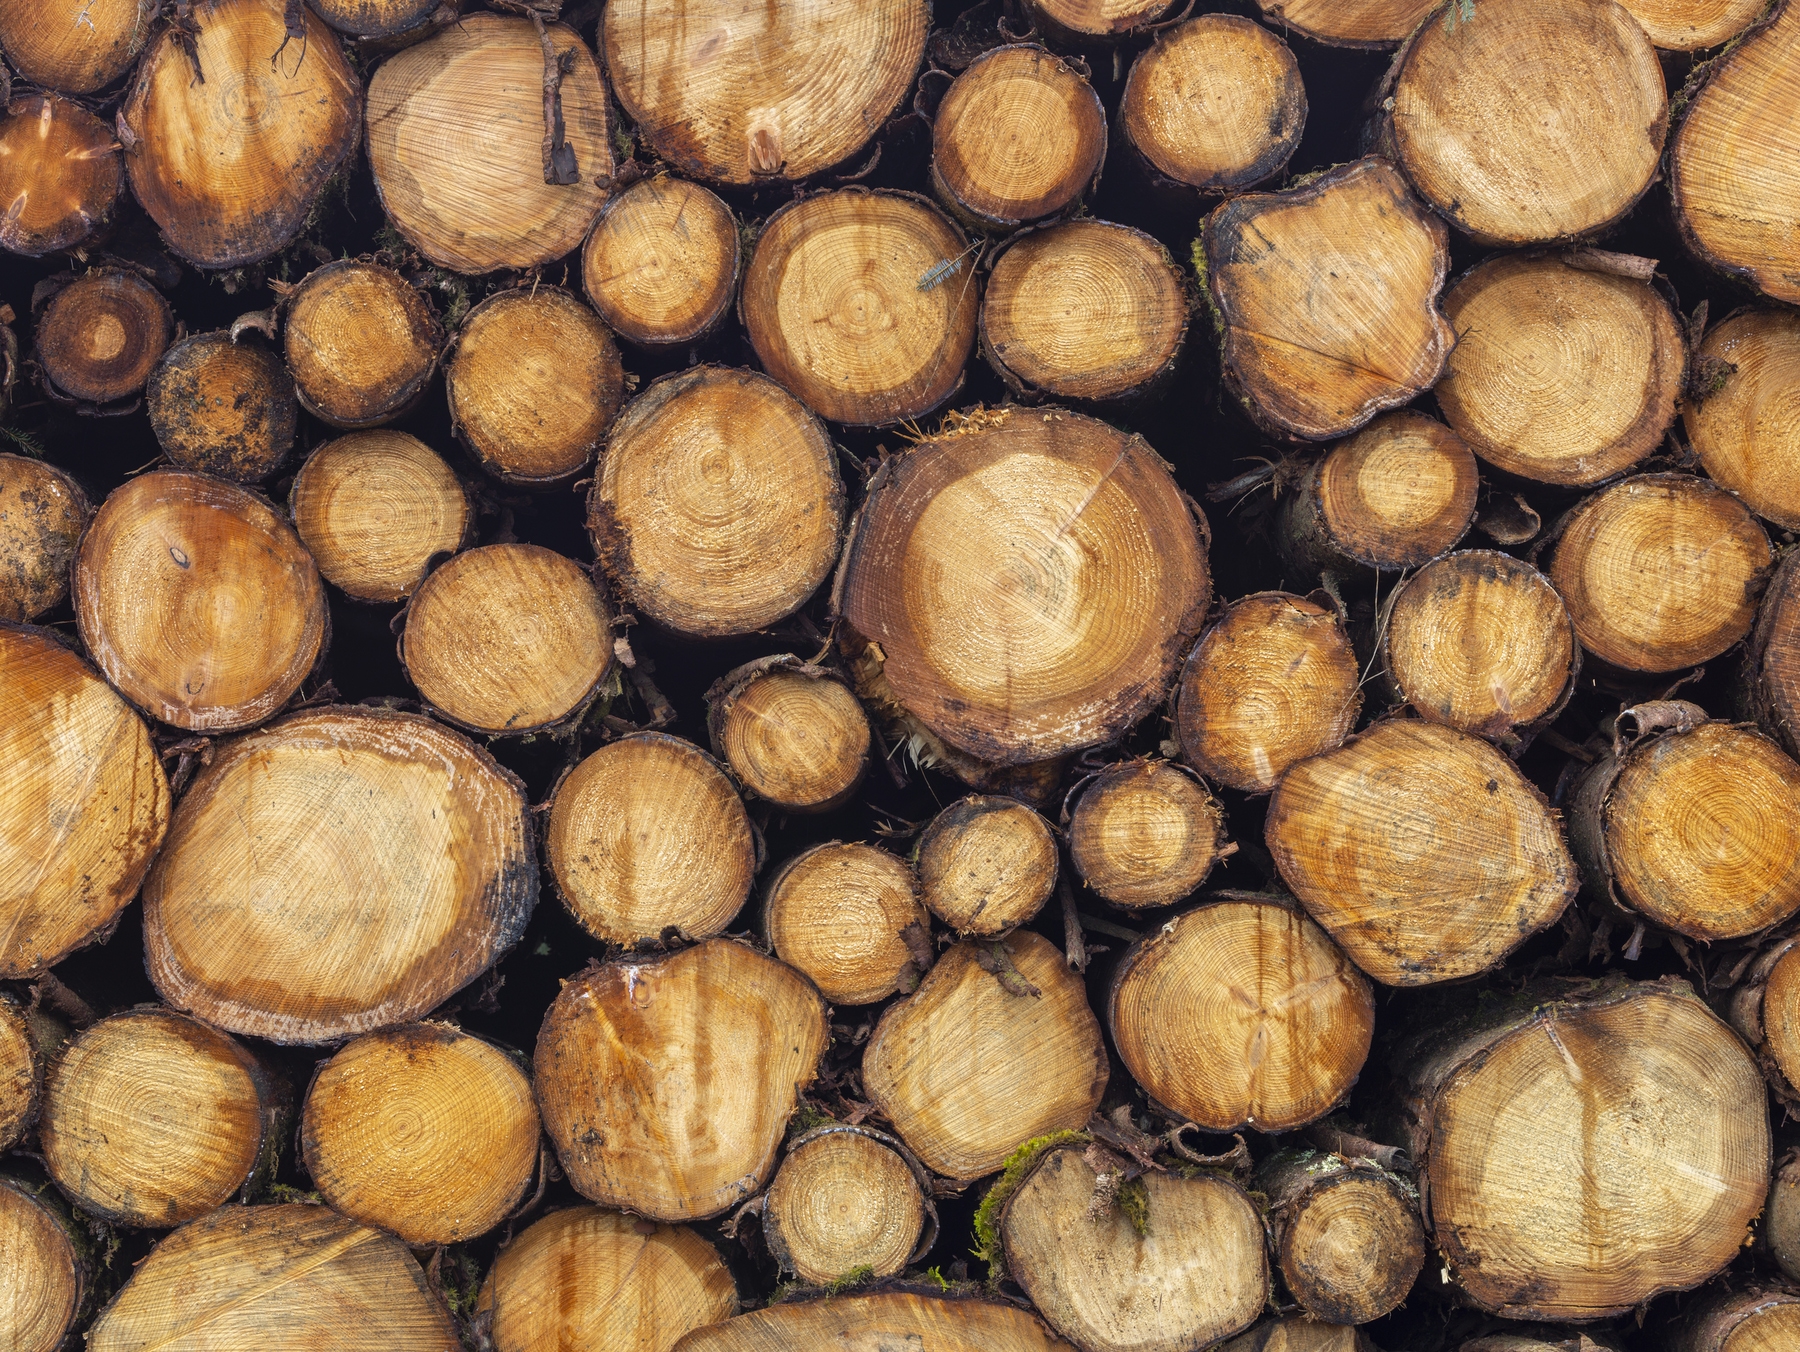 Wood Logs Wallpaper - Natural and Rustic Design